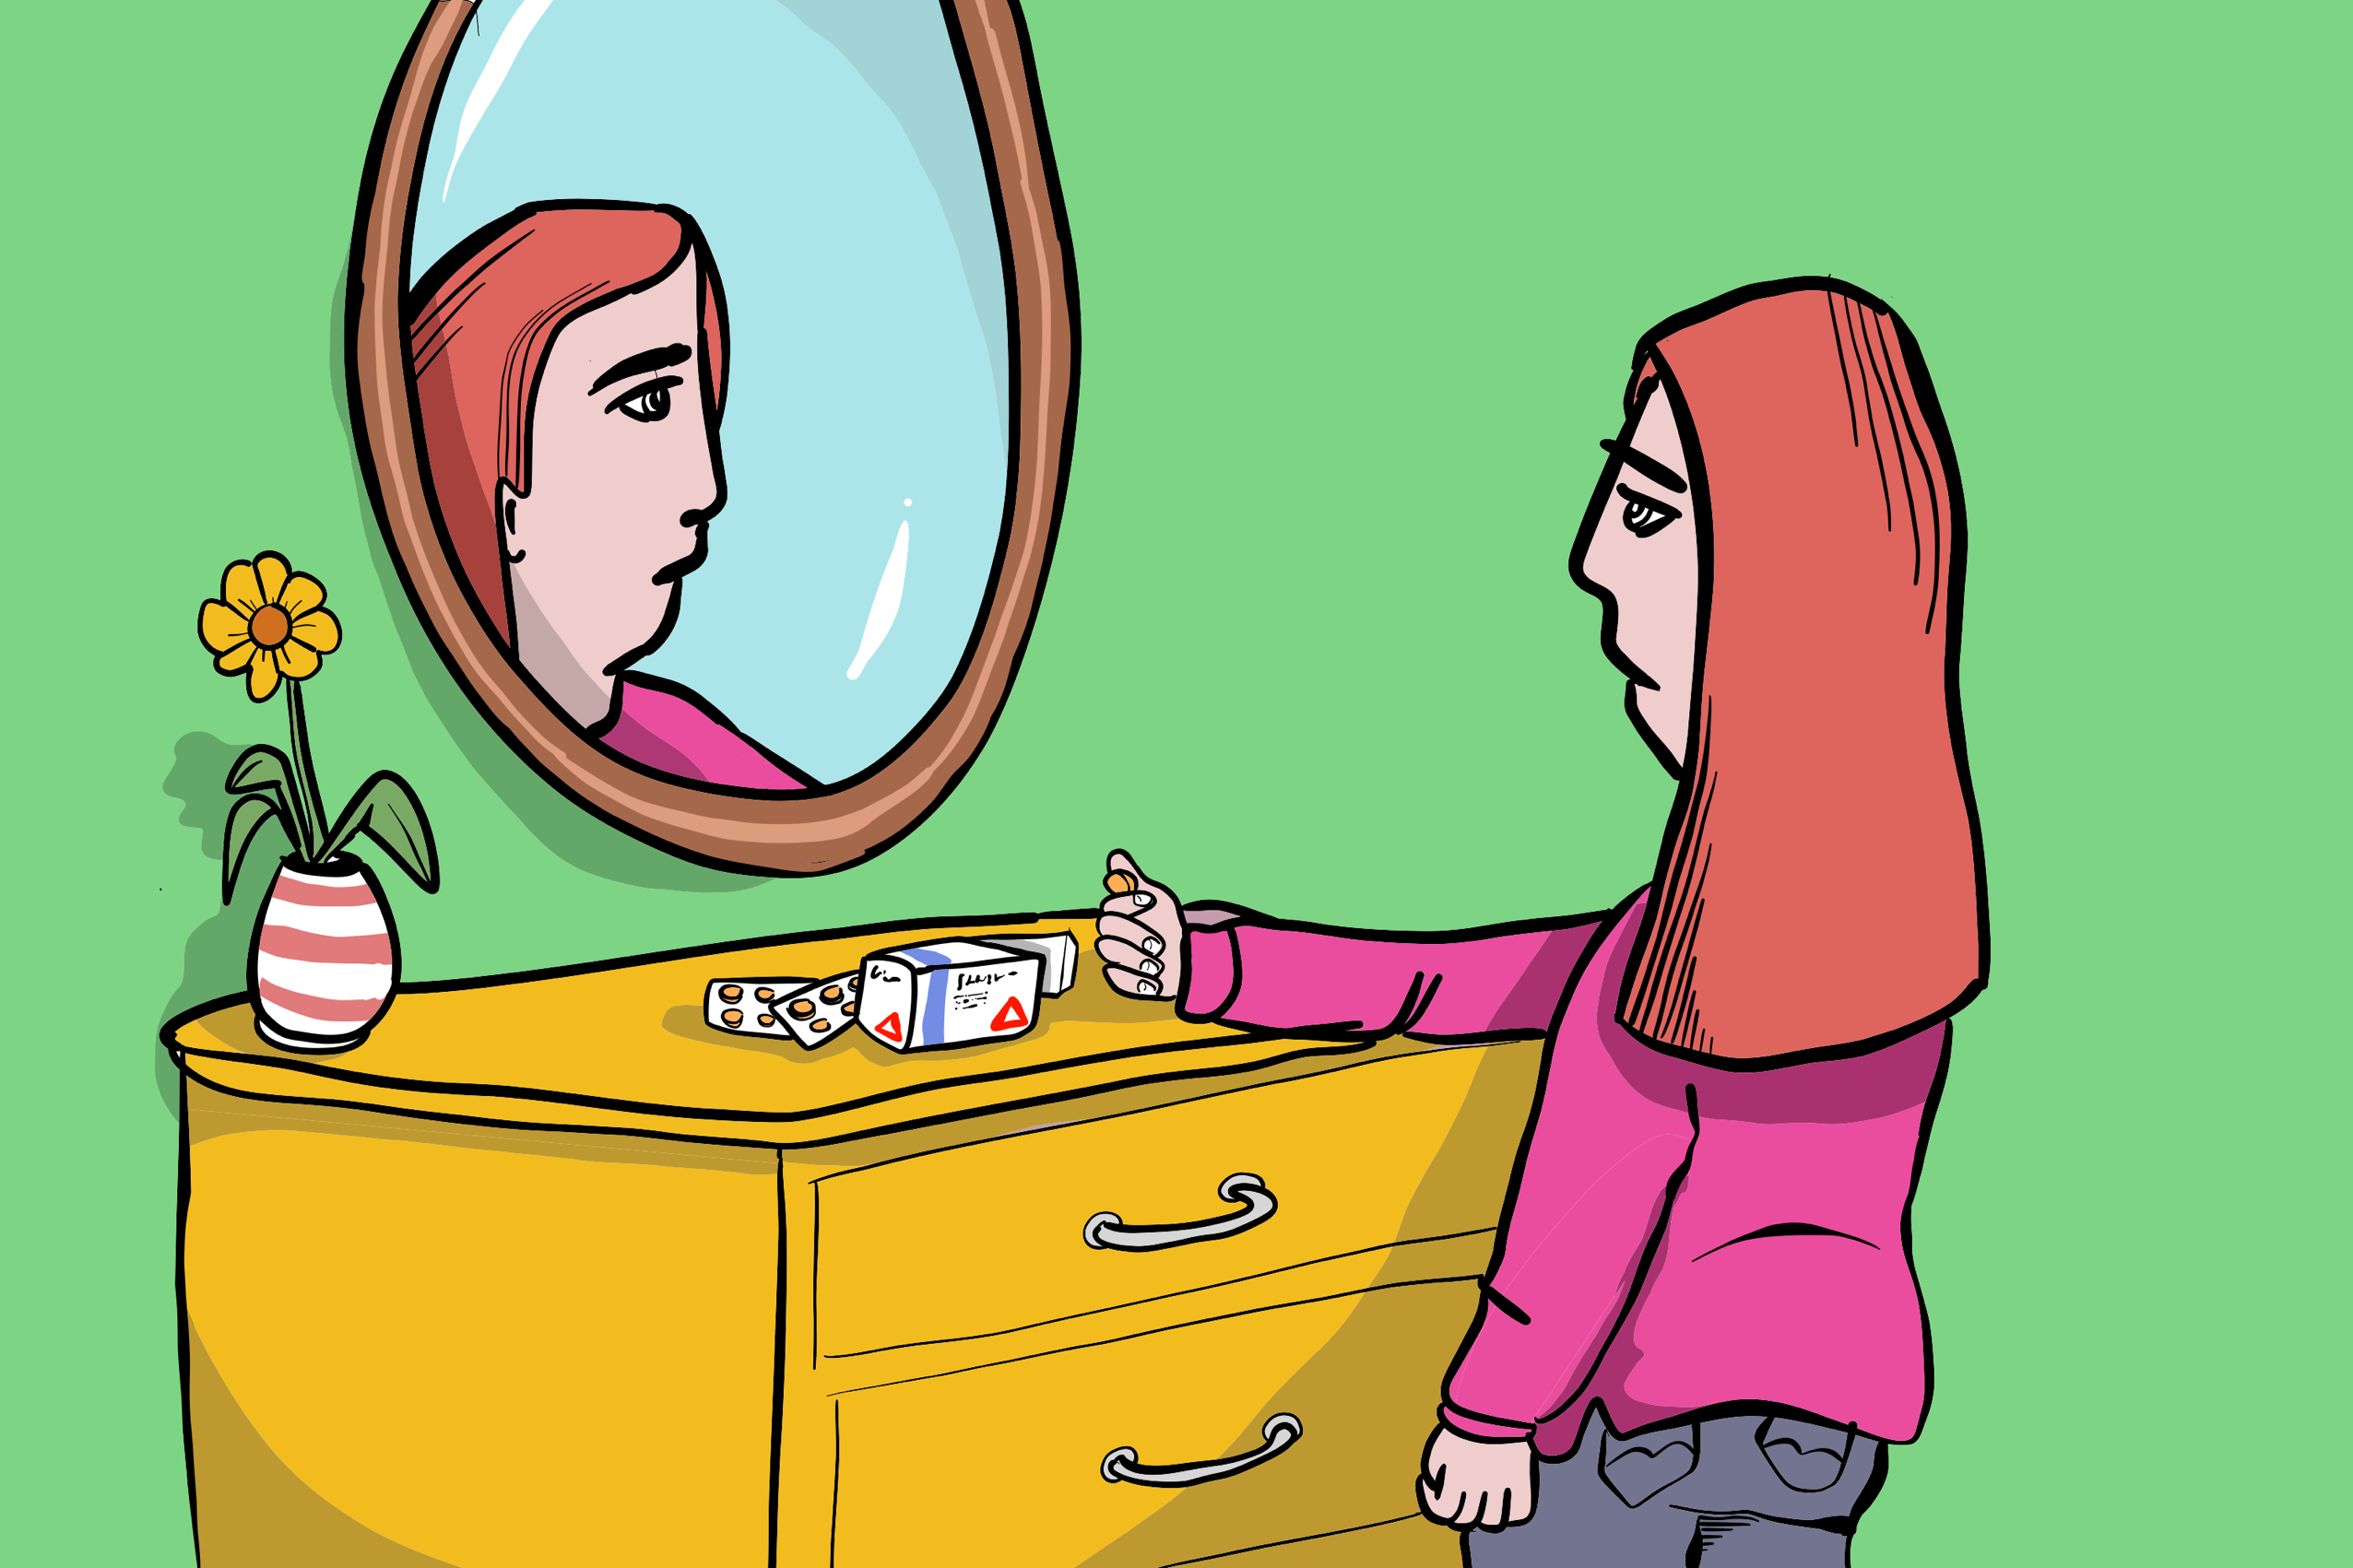 Illustrasjon av person som holder en pille av legemiddelet benzodiazepiner, og ser seg i speilet.